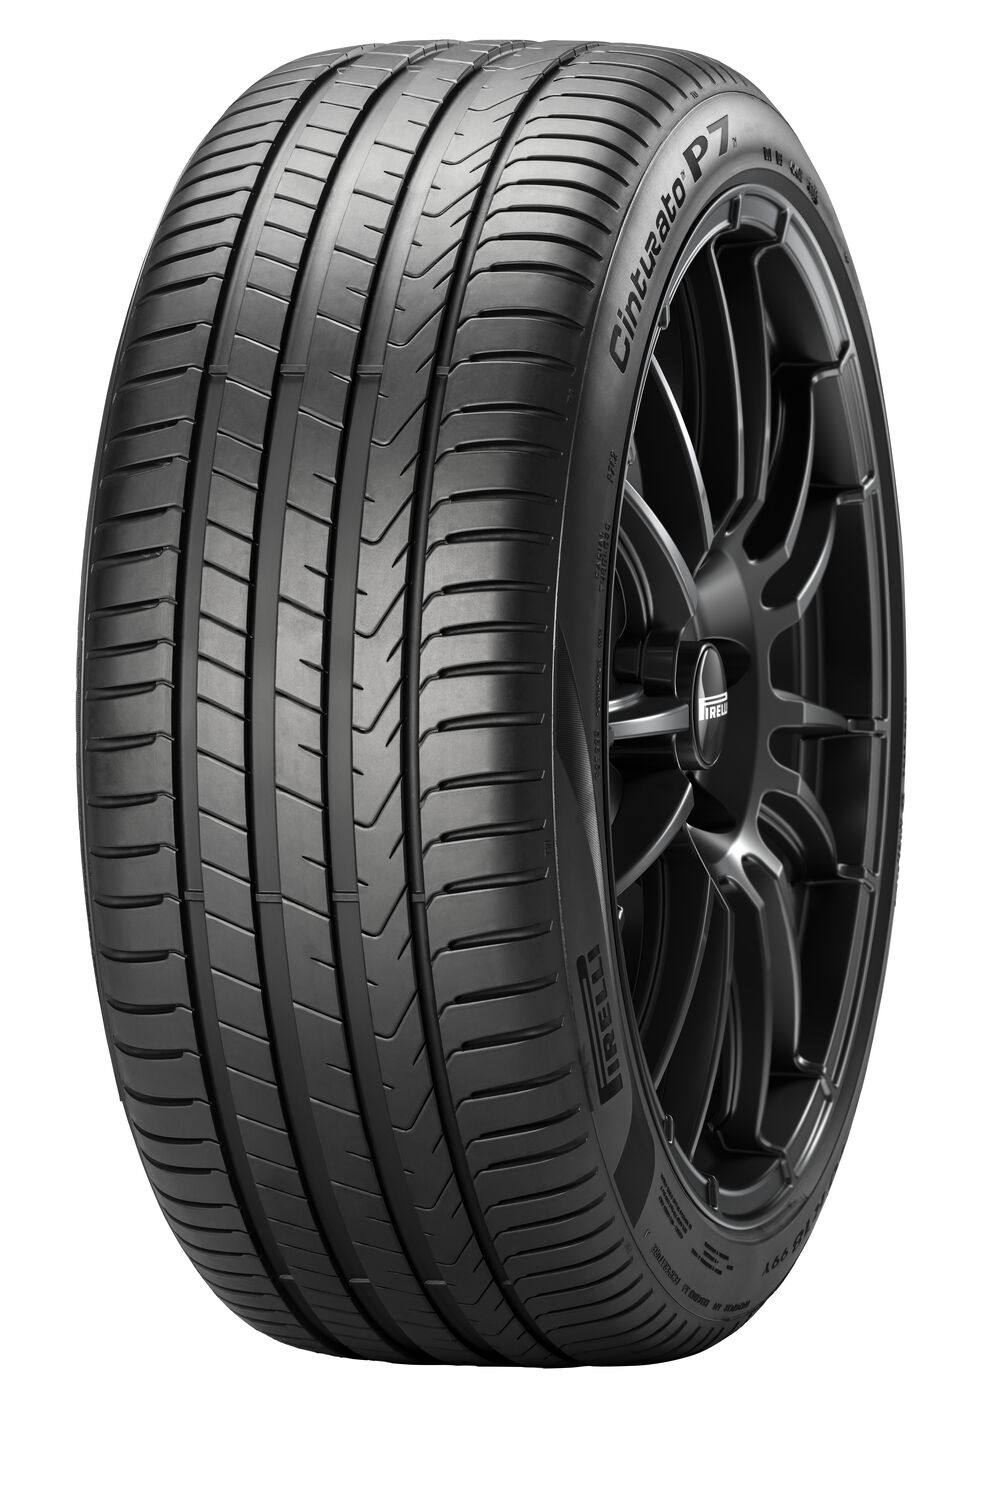 Gomme Nuove Pirelli 205/50 R17 89H CINTURATO P7 P7C2 pneumatici nuovi Estivo